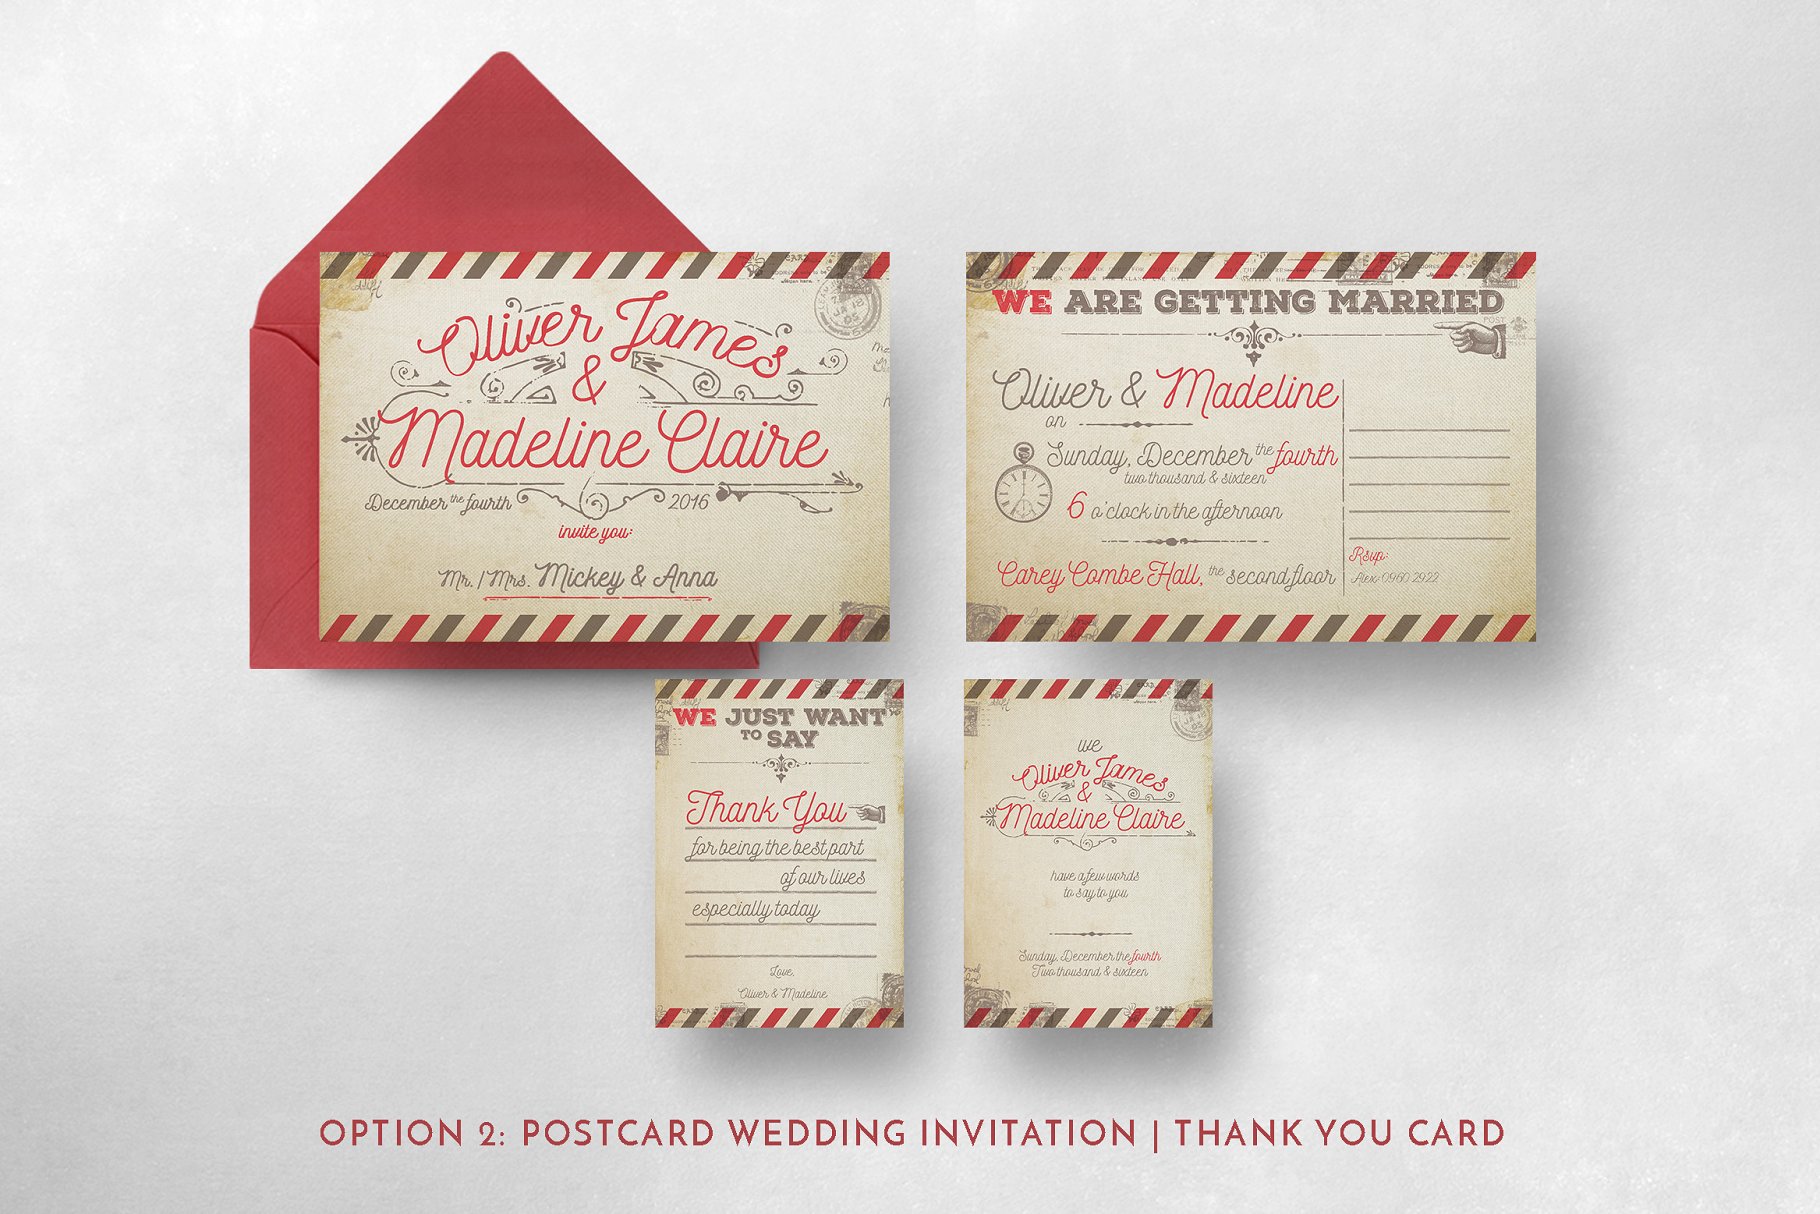 复古航空邮件婚礼设计套件 Vintage Airmail Wedding Suite插图(4)